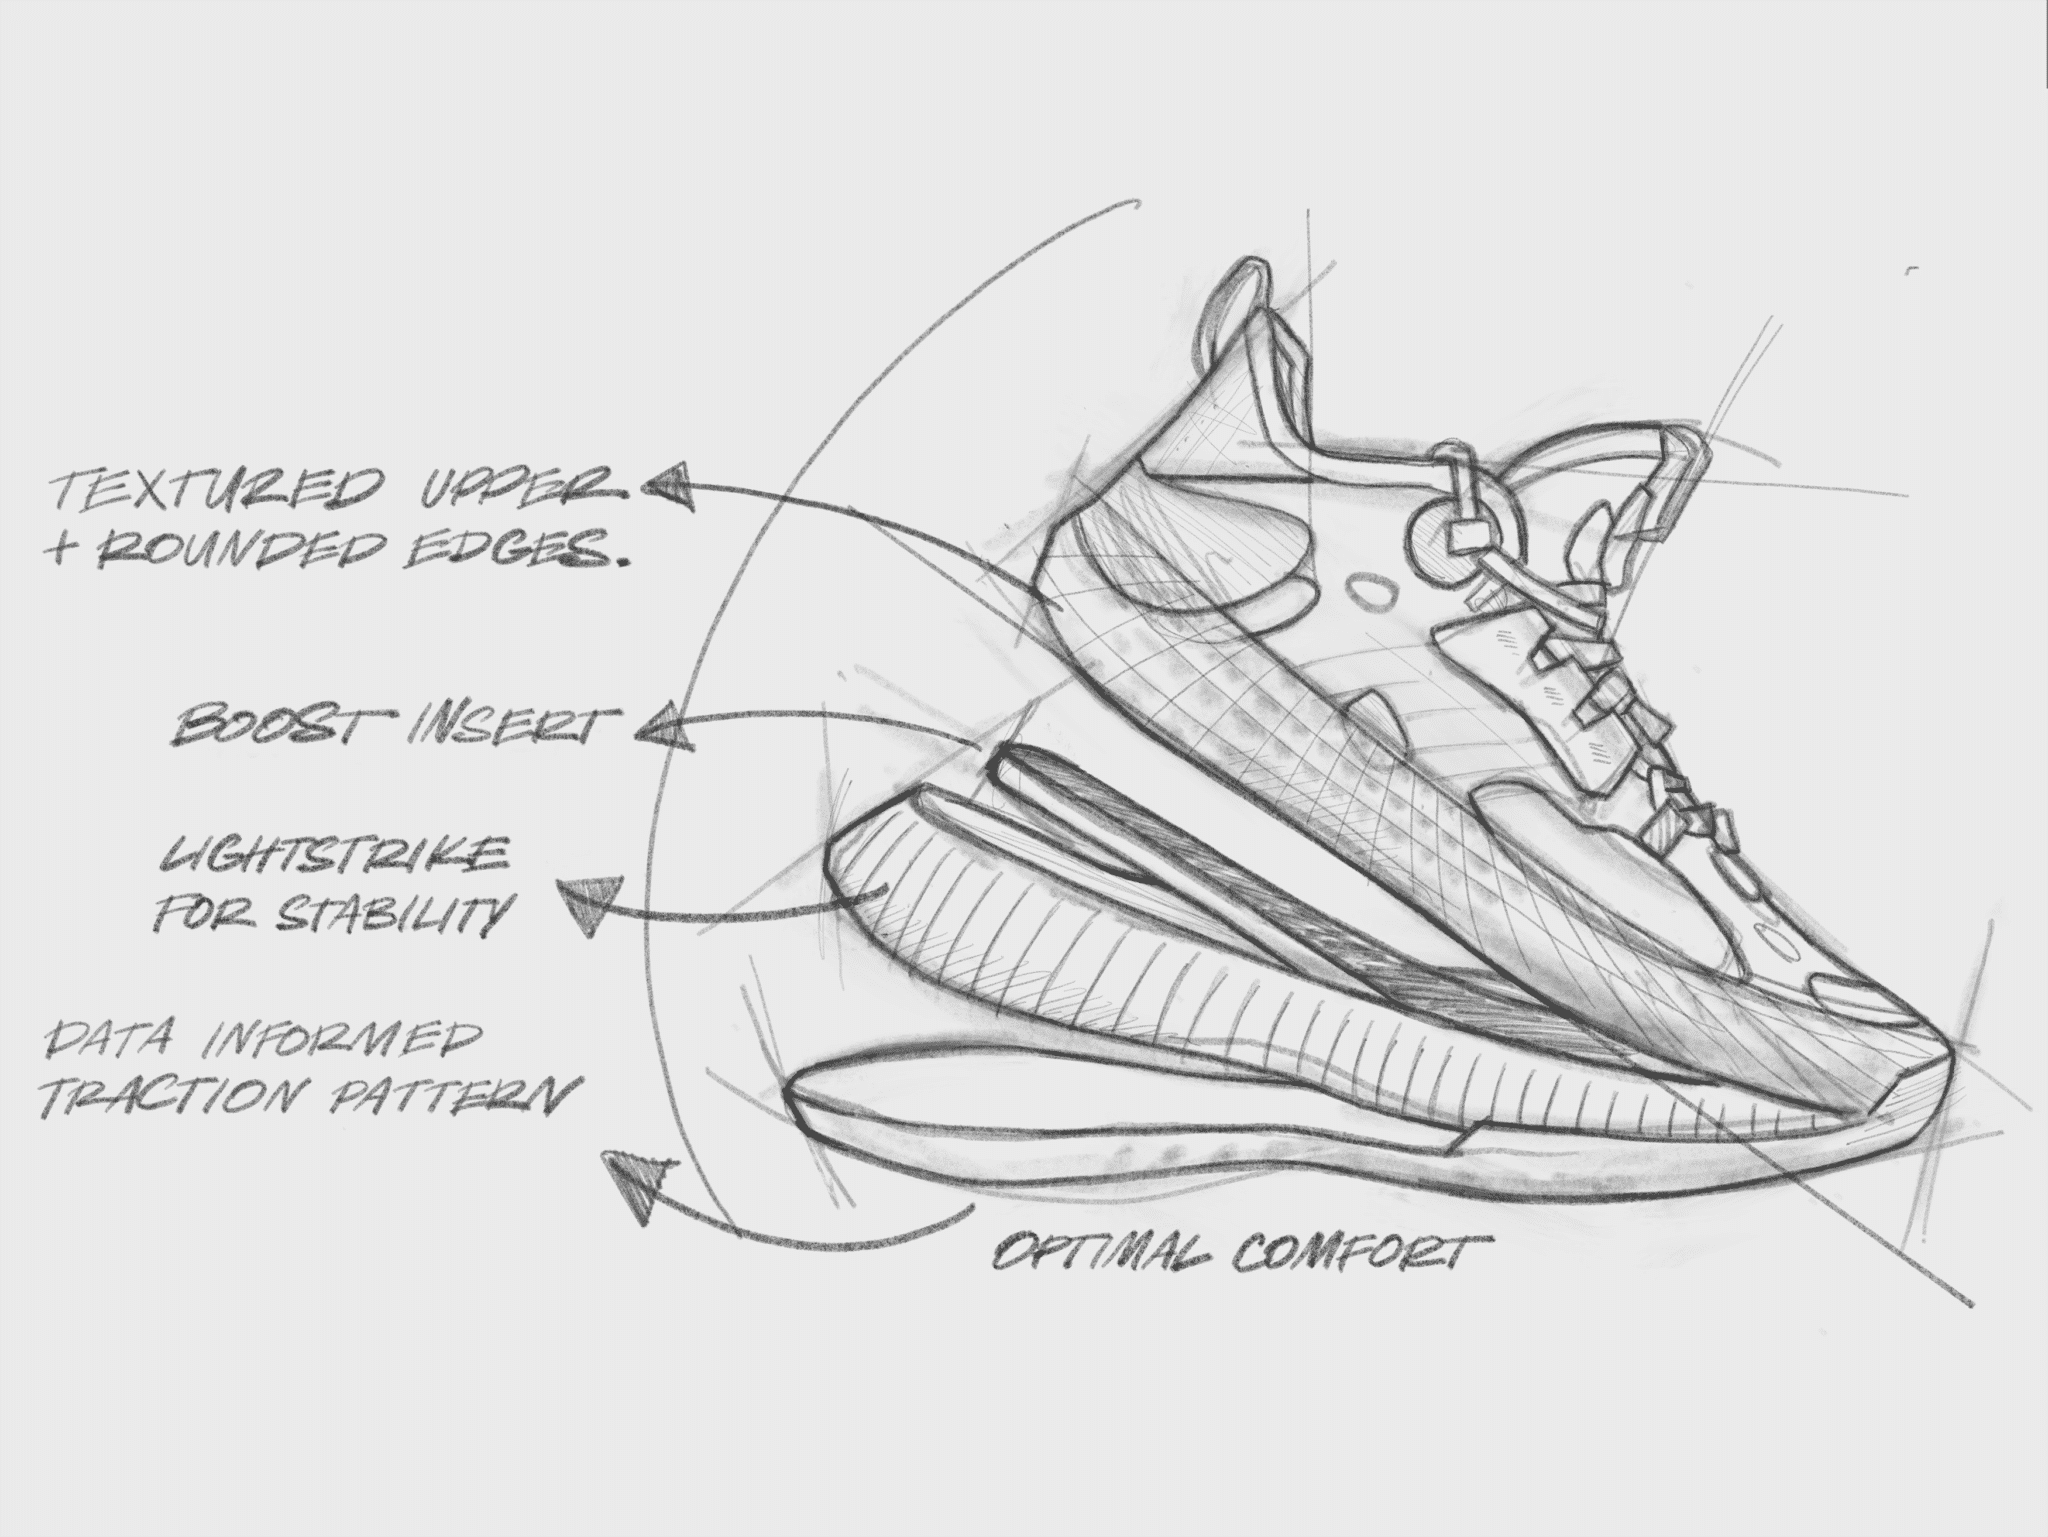 Adidas newest footwear innovation- FUTURENATURAL